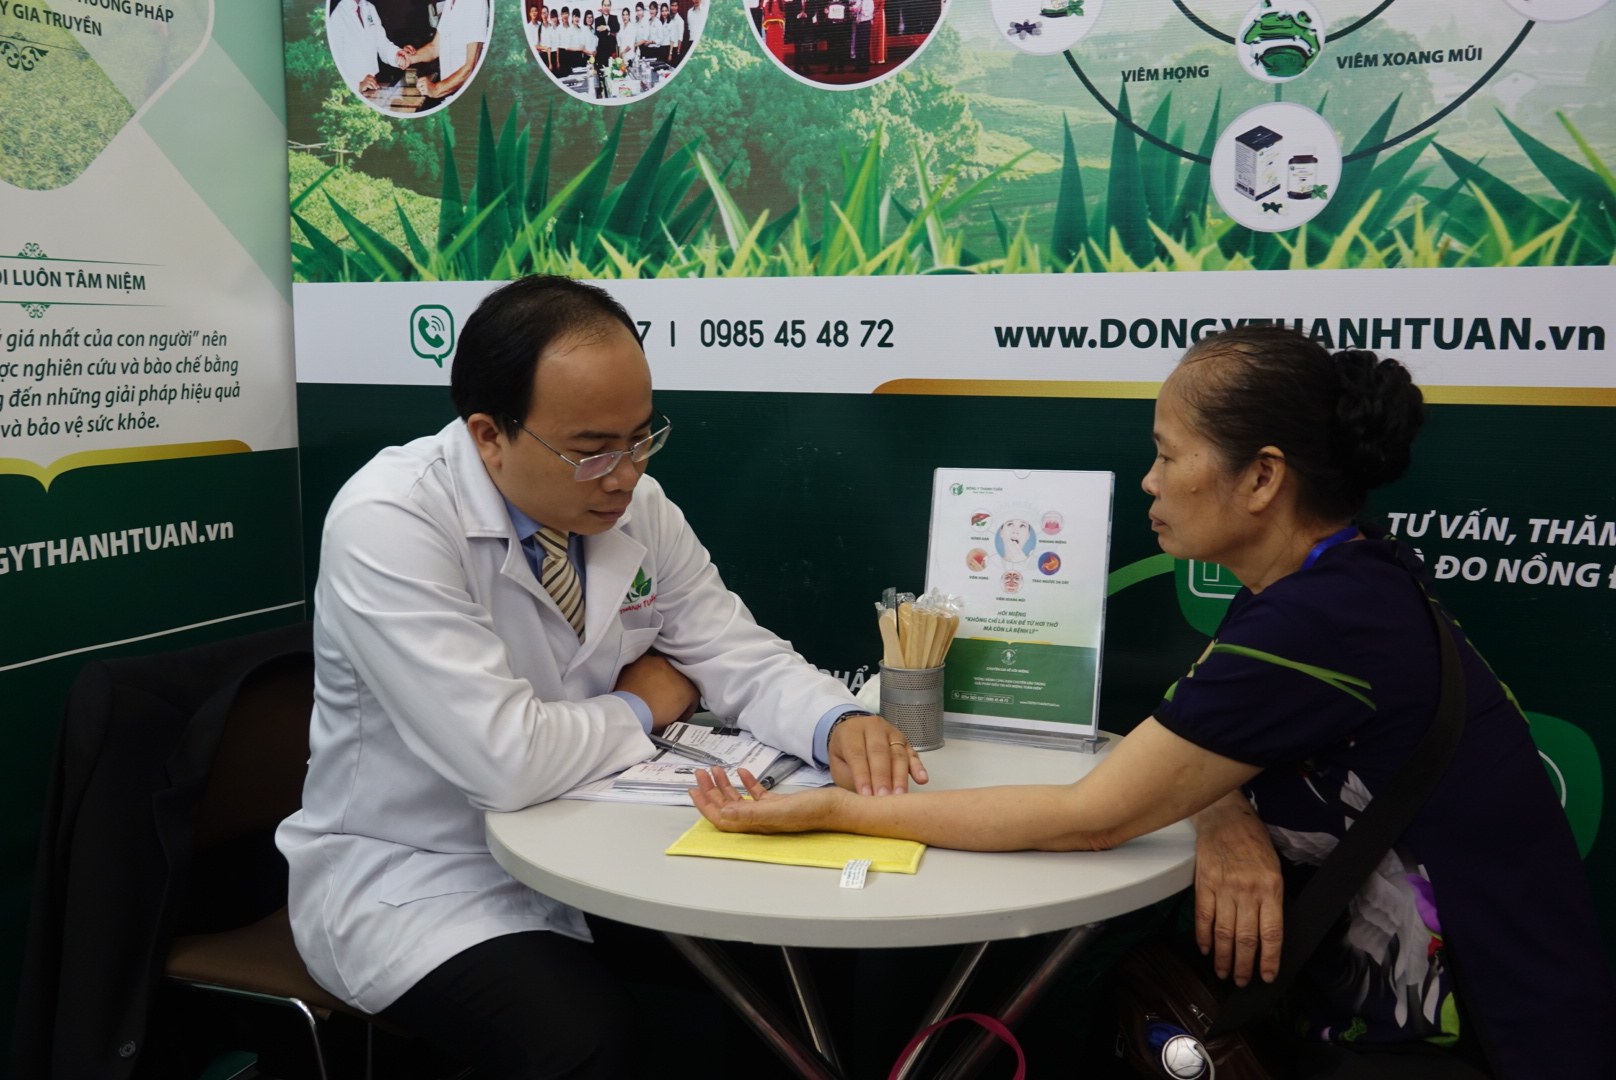 Thầy thuốc Nguyễn Thanh Tuấn bắt mạch tư vấn bệnh cho khách hàng